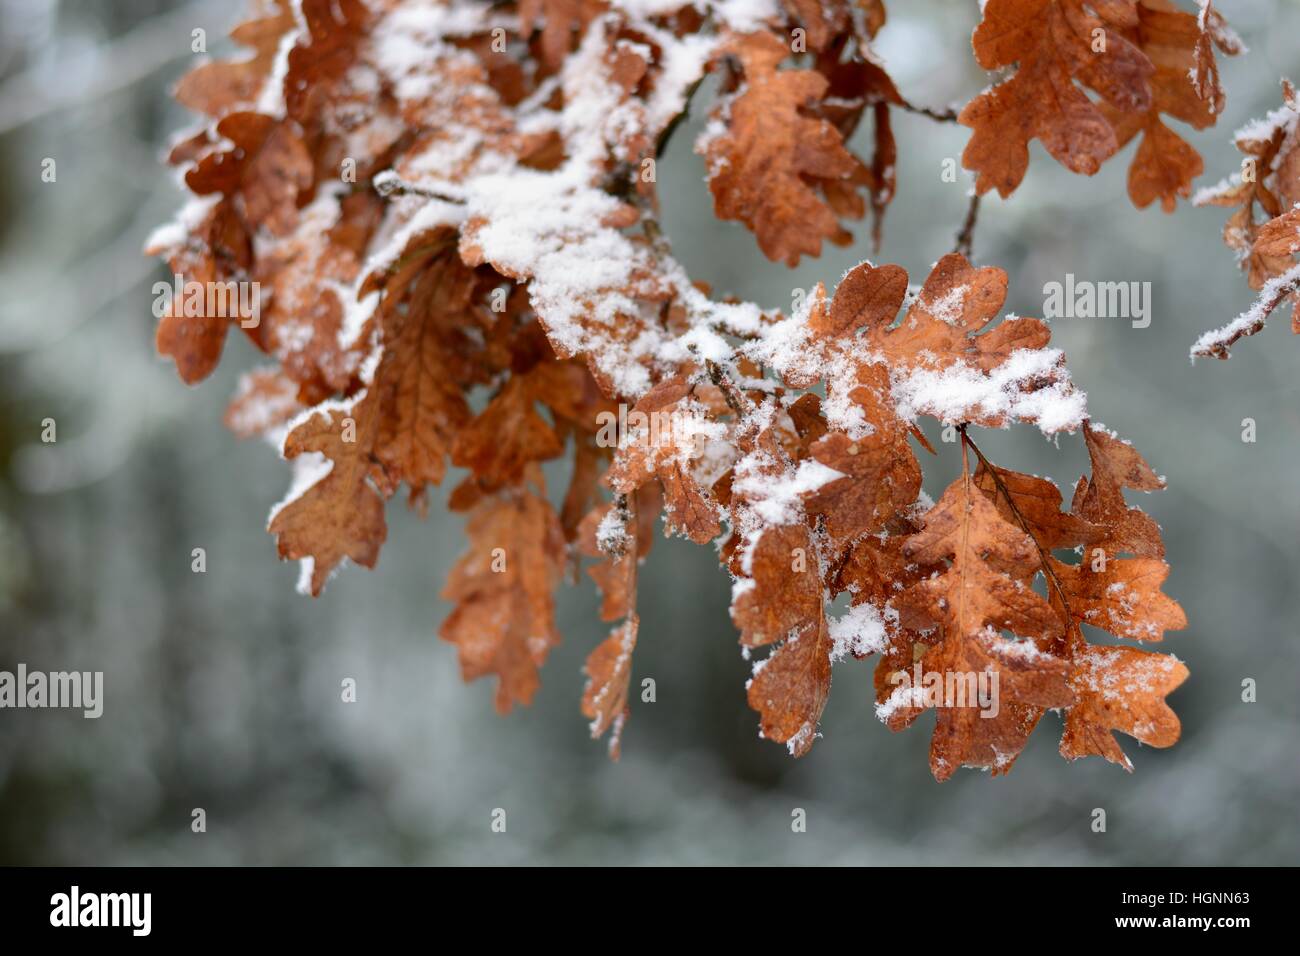 snow on autumn oak leaves Stock Photo